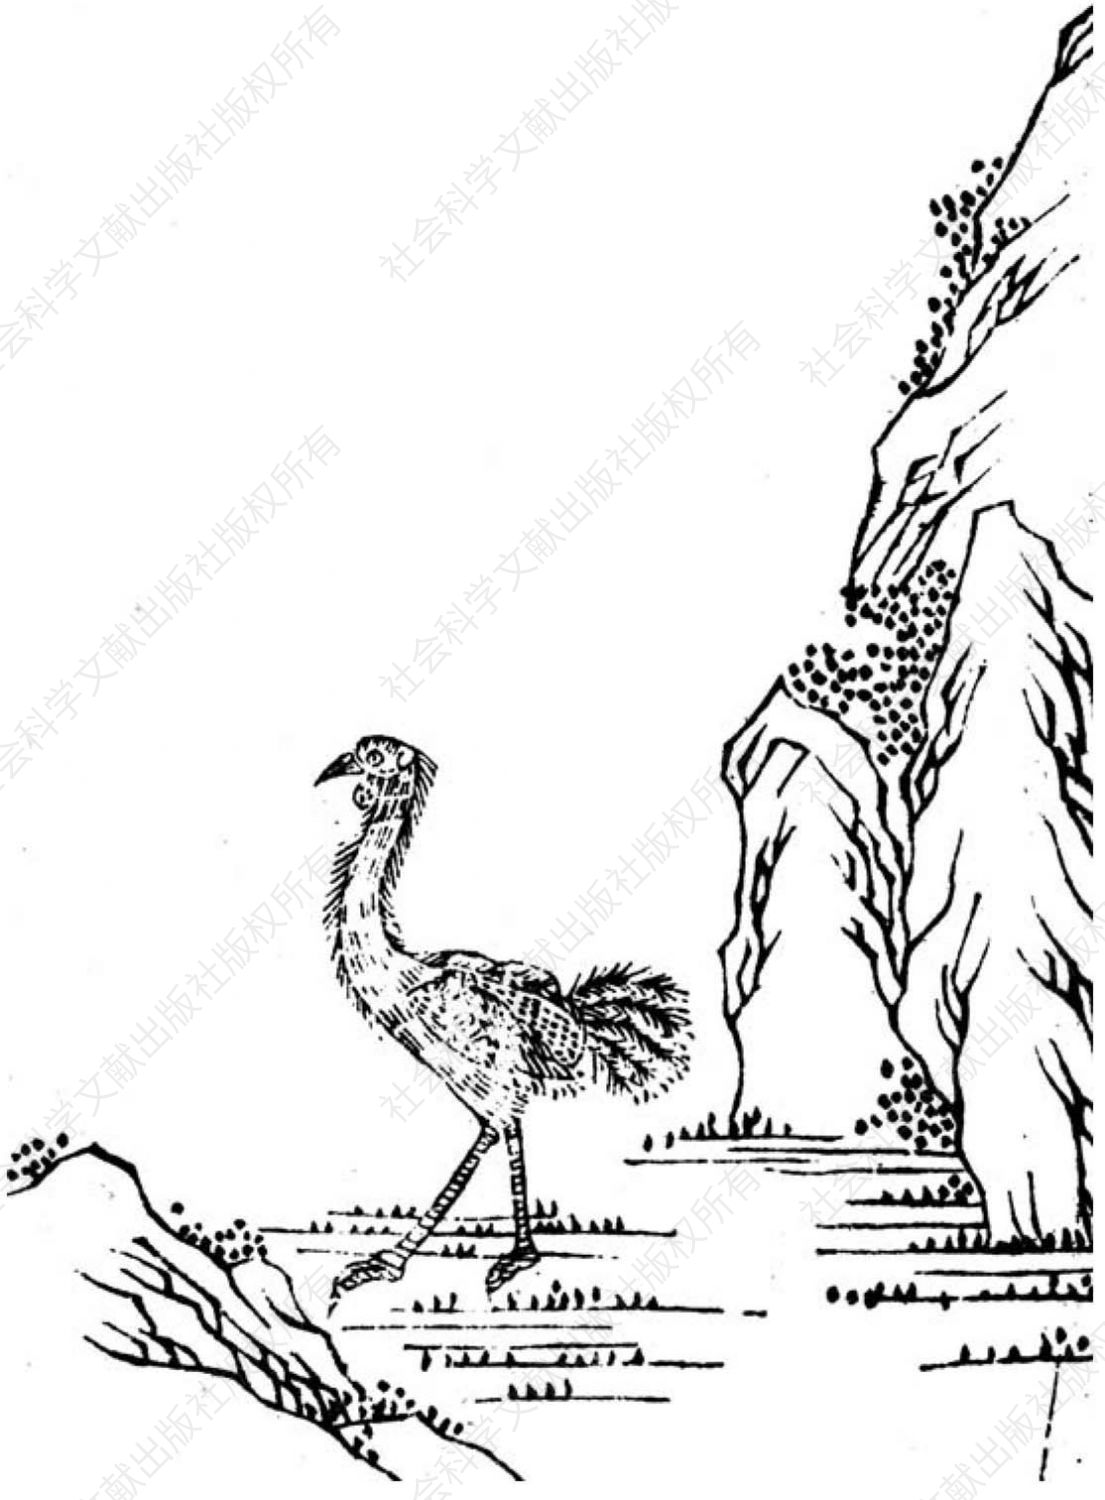 图11 《坤舆图说》里的骆驼鸟